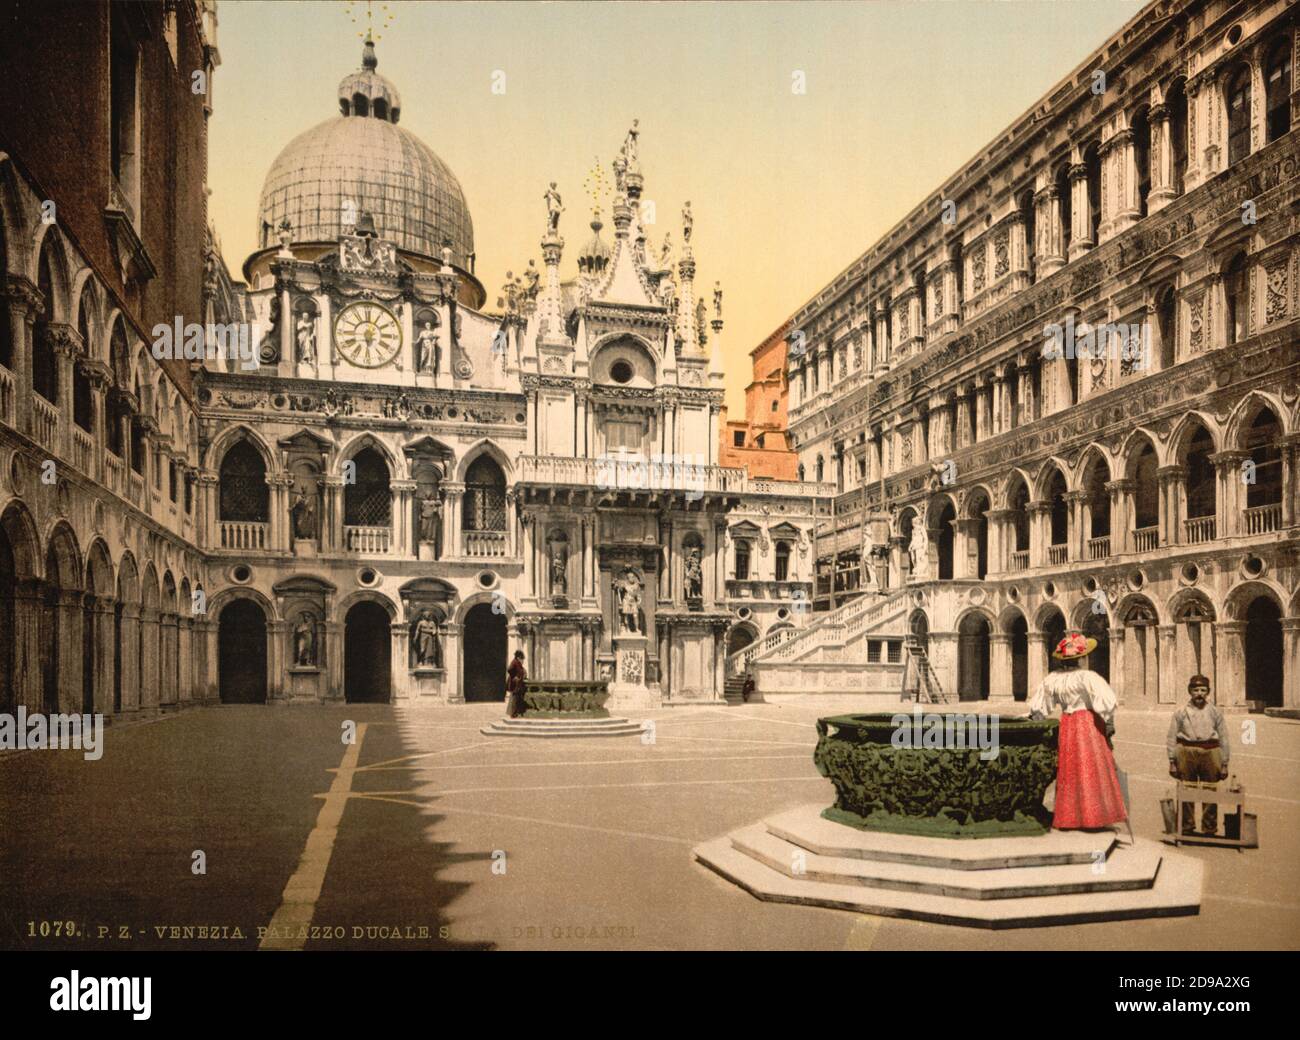 1895 ca. , VENEZIA ,  ITALY : Cortile and Scala dei Giganti ,  PALAZZO DUCALE . Photochrom print colors edited by Detroit Publishing Co.  -  VENICE - VENETO -  ITALIA - FOTO STORICHE - HISTORY - GEOGRAFIA - GEOGRAPHY  - ARCHITETTURA - ARCHITECTURE  -     - ARTS - ARTE - OTTOCENTO - 800's - '800 - VENETO - tourists - turista - turisti - turismo   ----  Archivio GBB Stock Photo